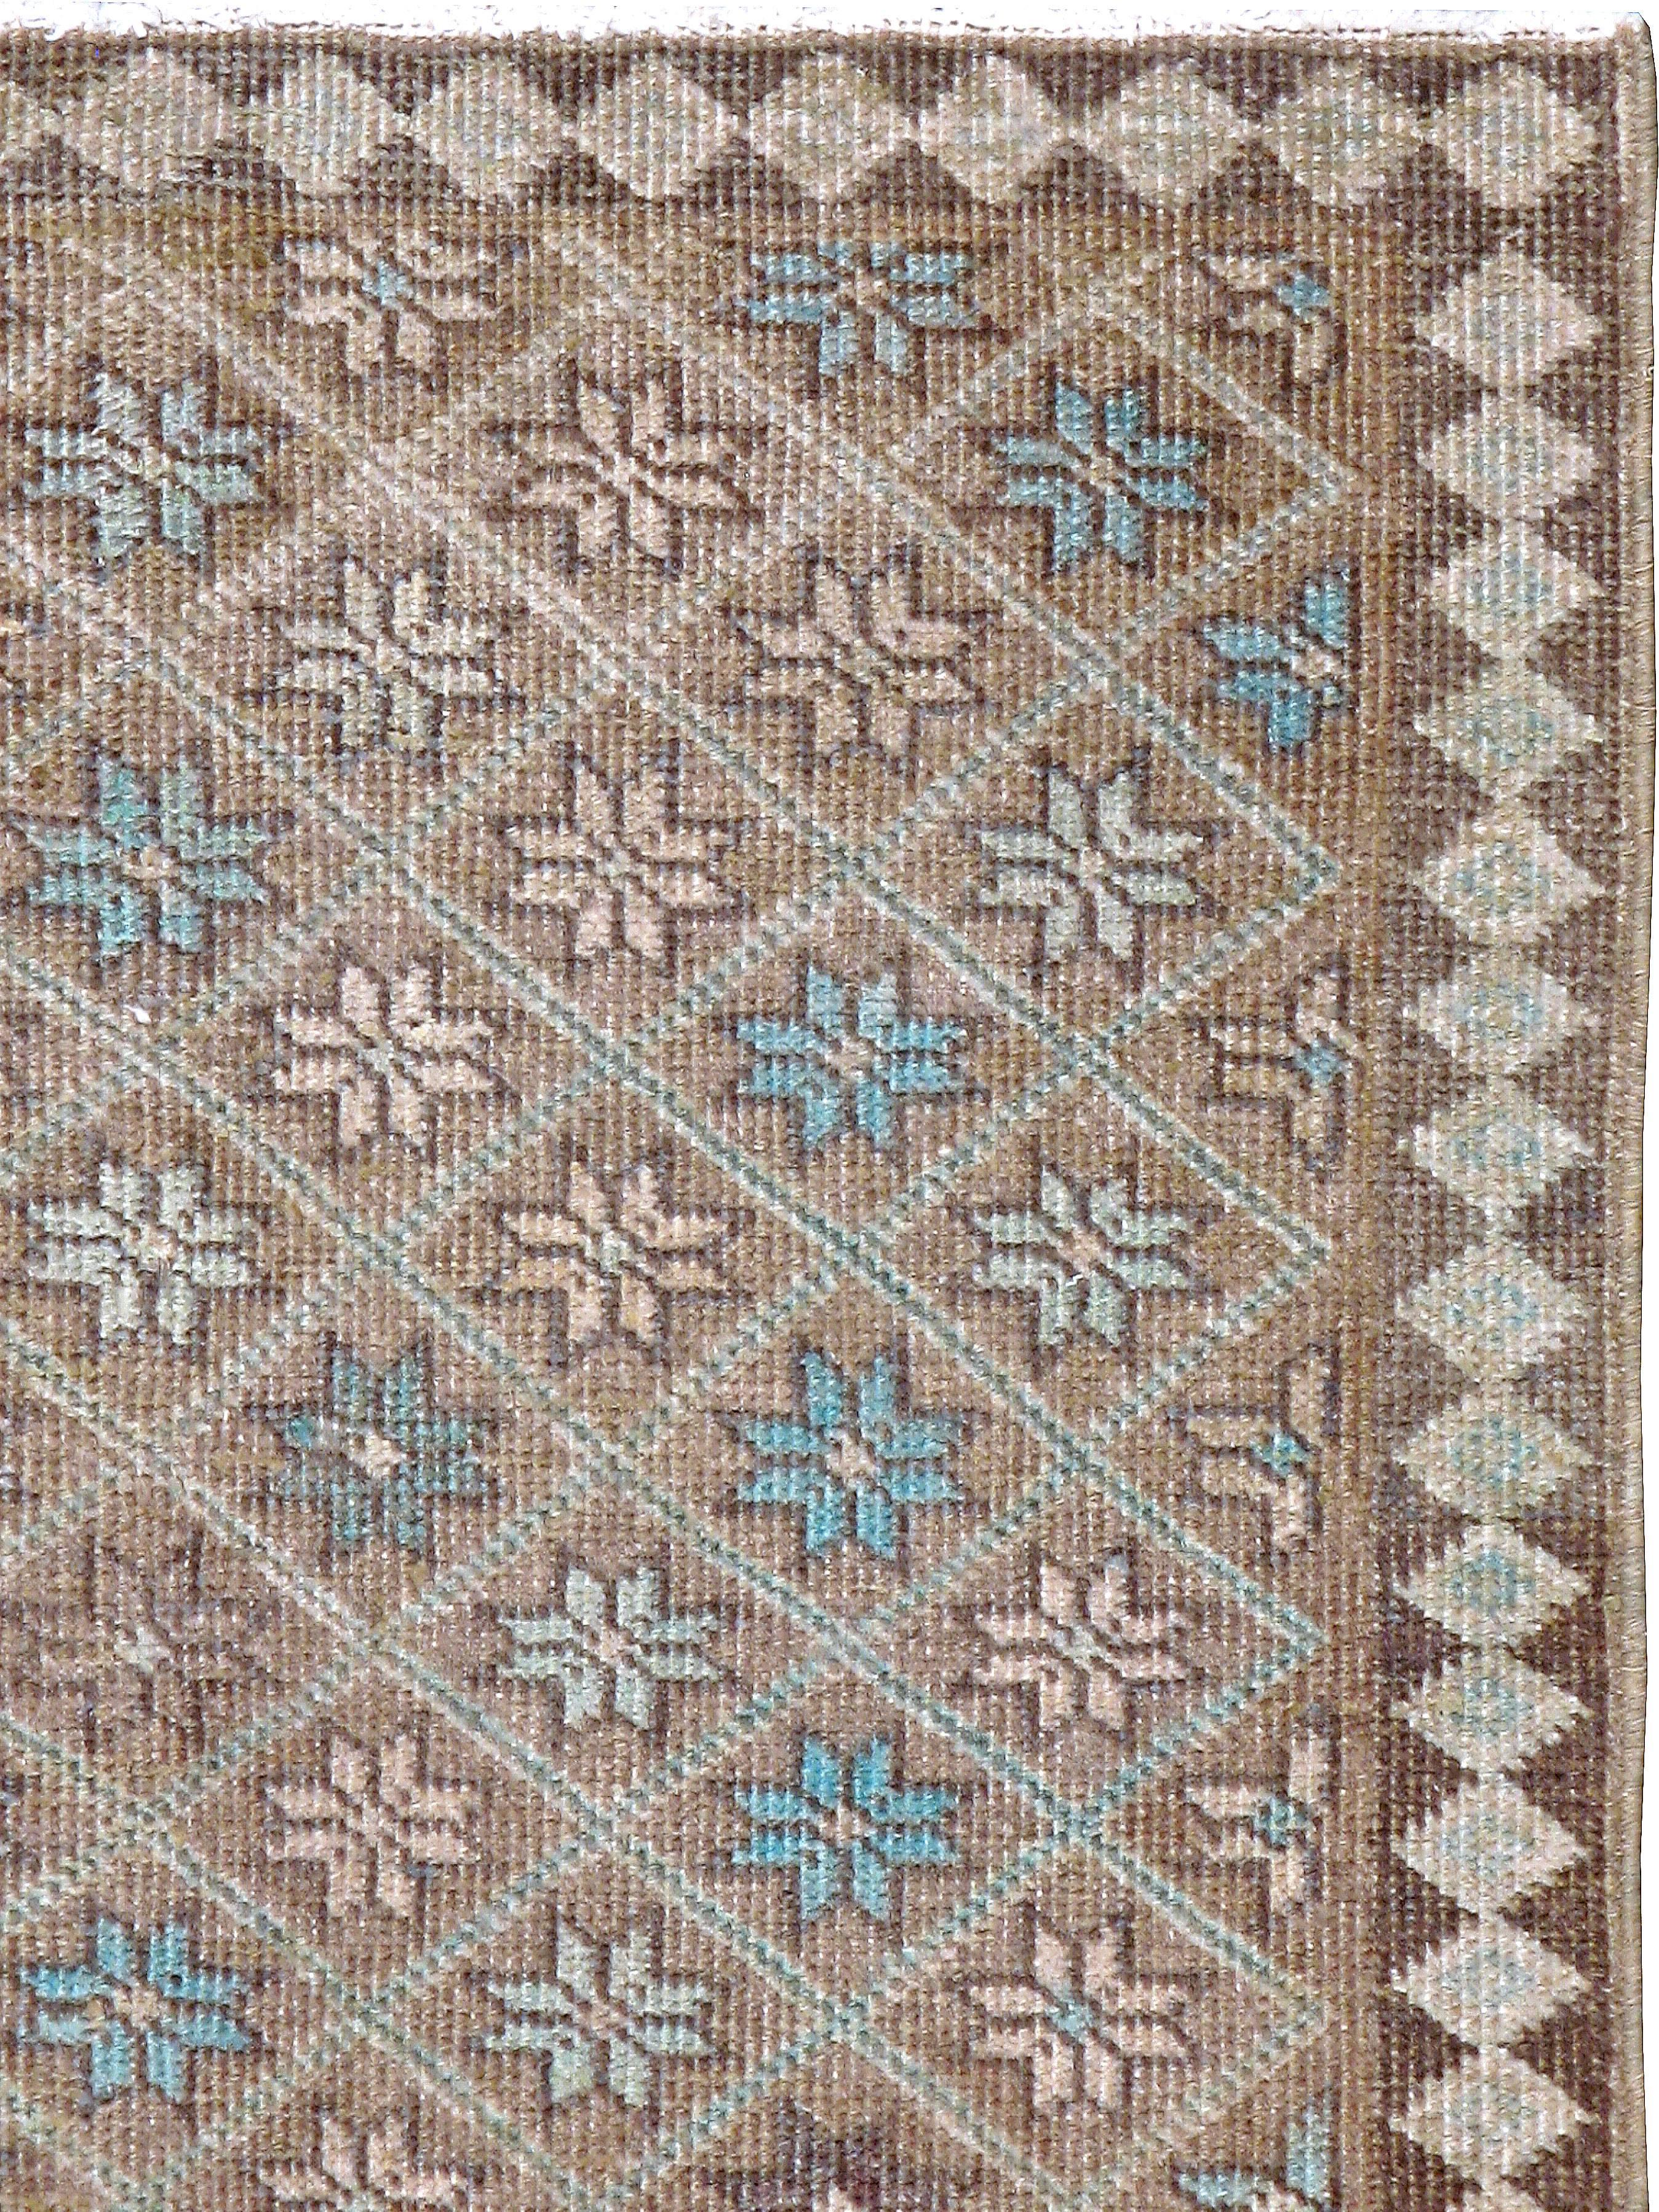 Tapis persan de Tabriz du milieu du 20e siècle dans le style des tapis turcs Damali. Les tapis Damali présentent généralement un motif en damier ou en losange, d'où le nom 